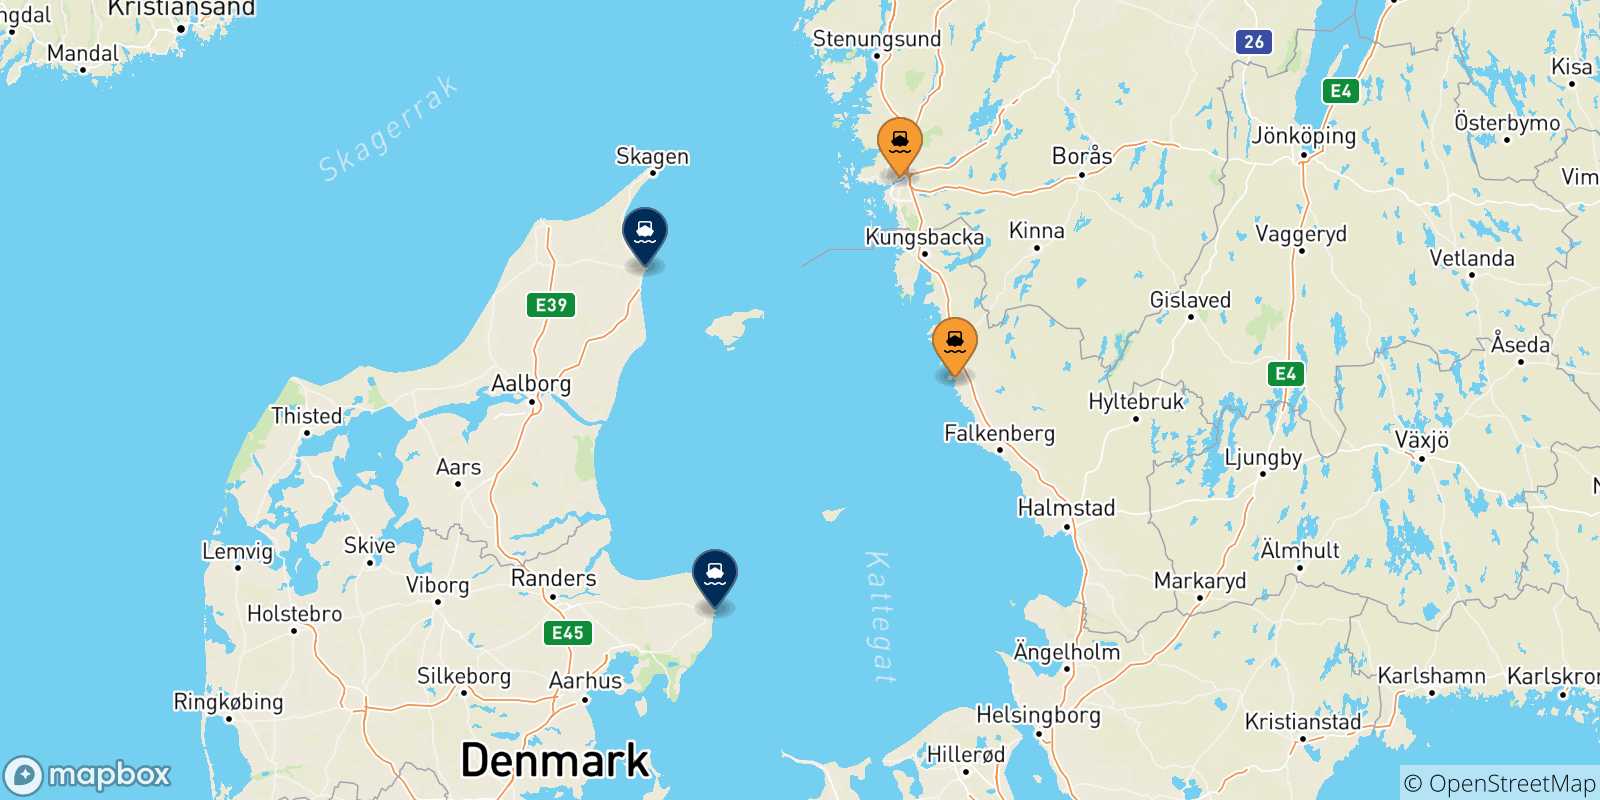 Mappa delle possibili rotte tra la Svezia e la Danimarca